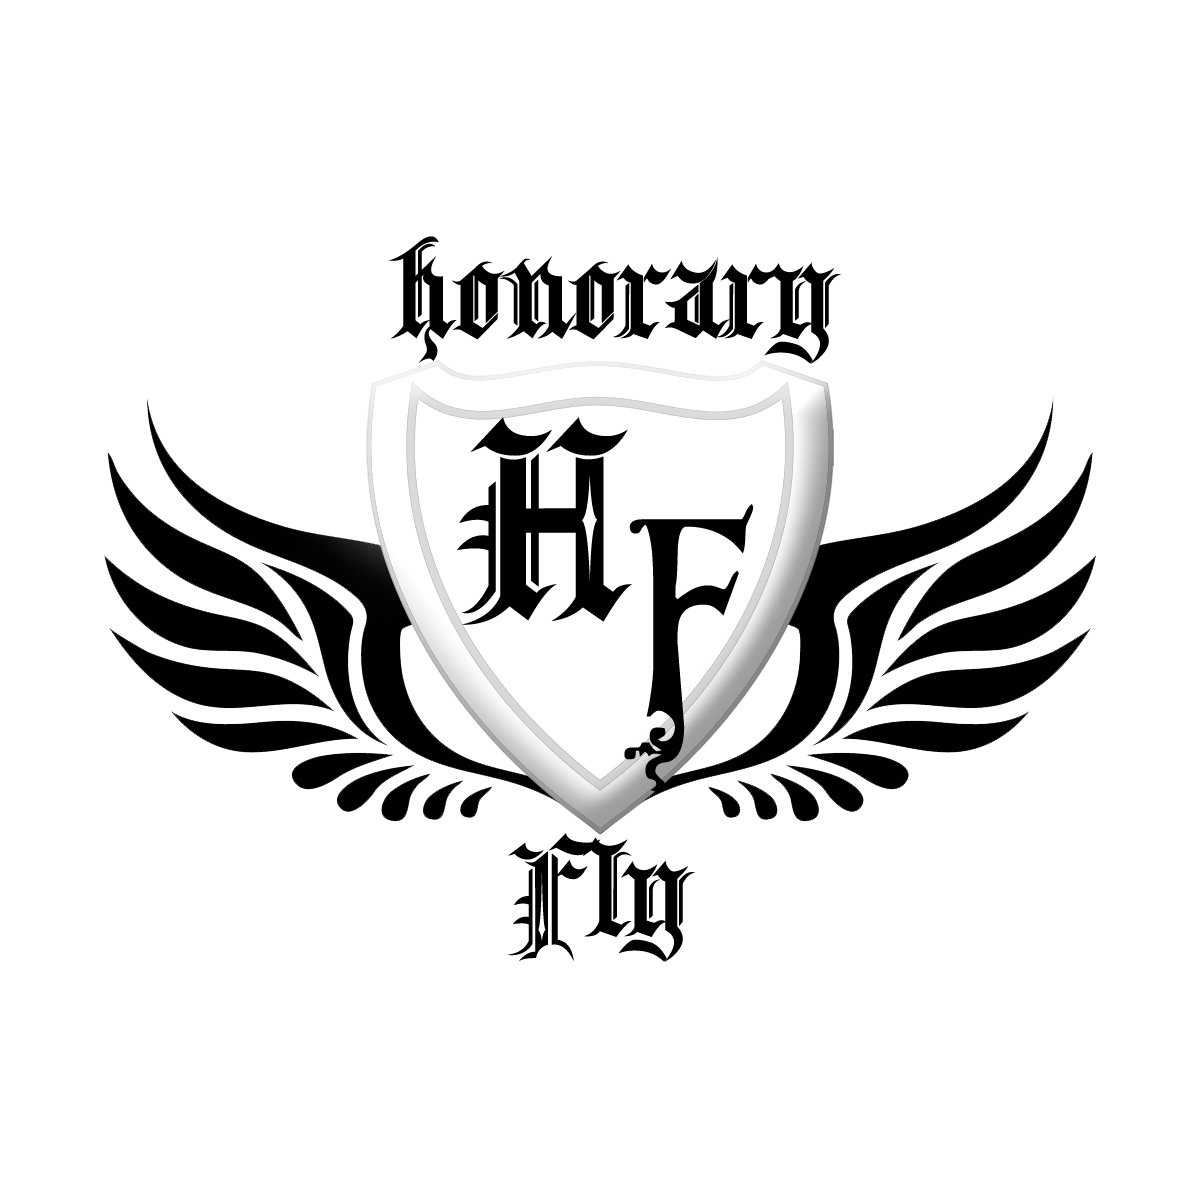  HF HONORARY FLY